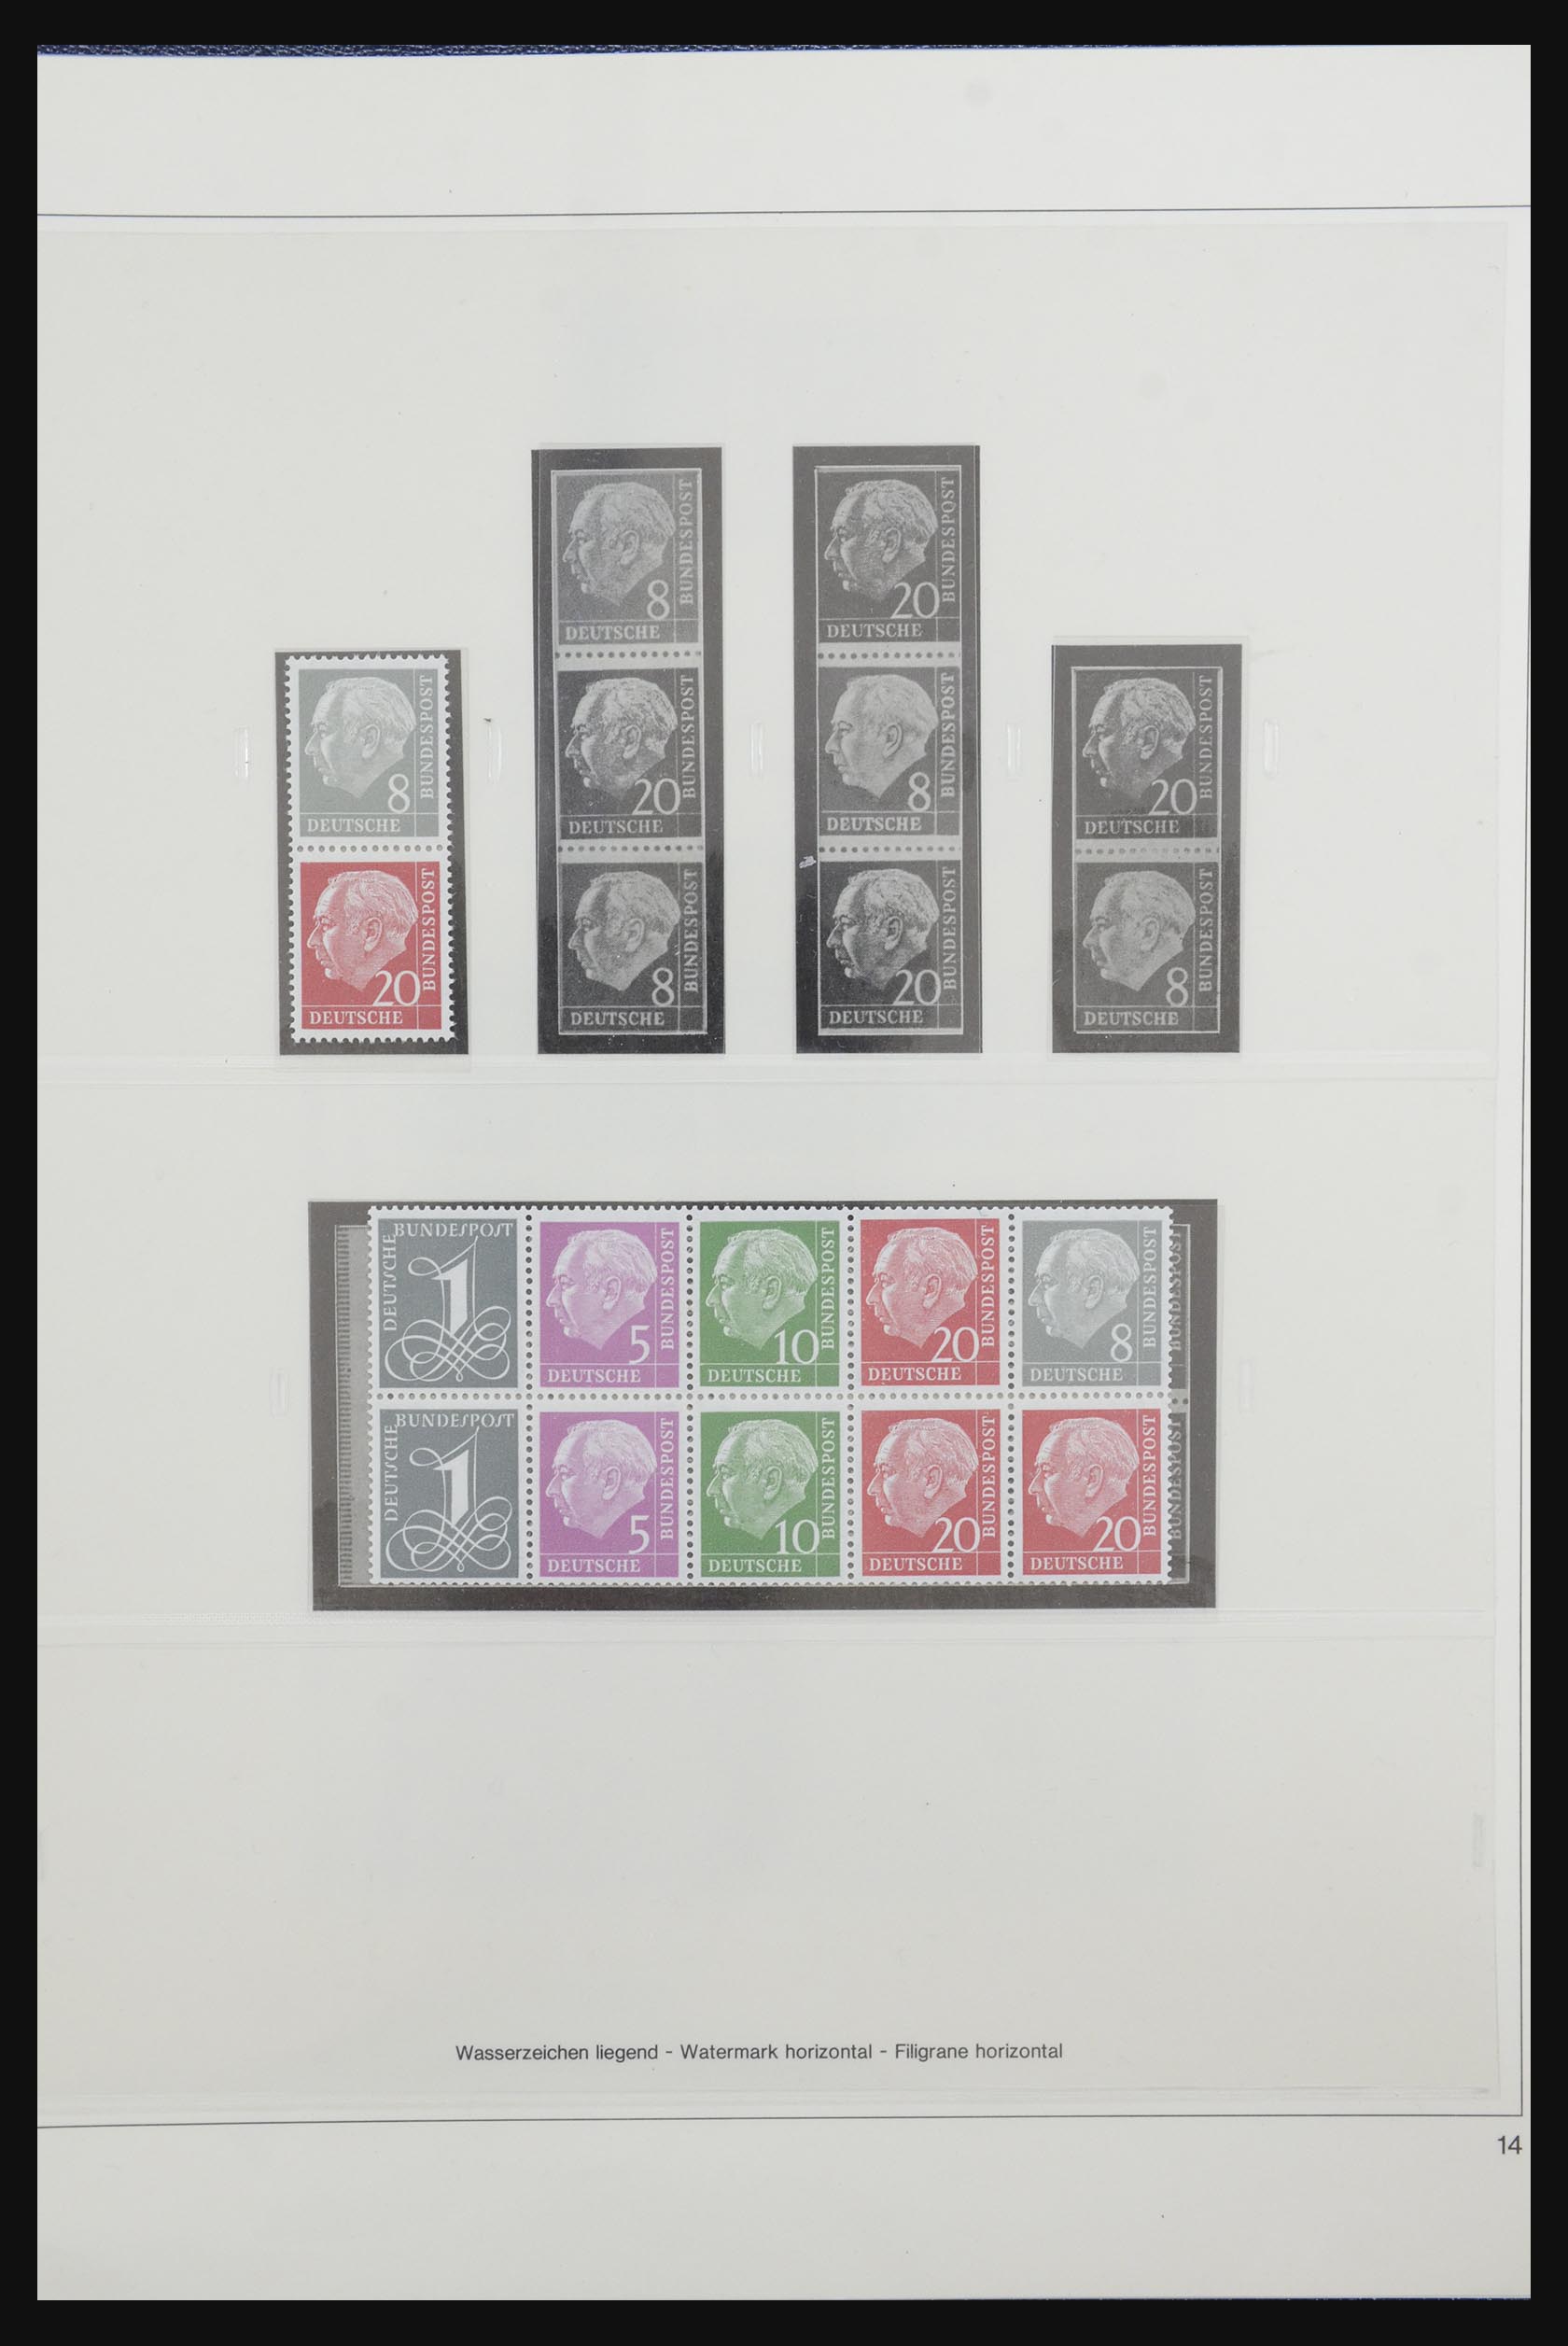 31842 017 - 31842 Bundespost combinations 1951-2003.